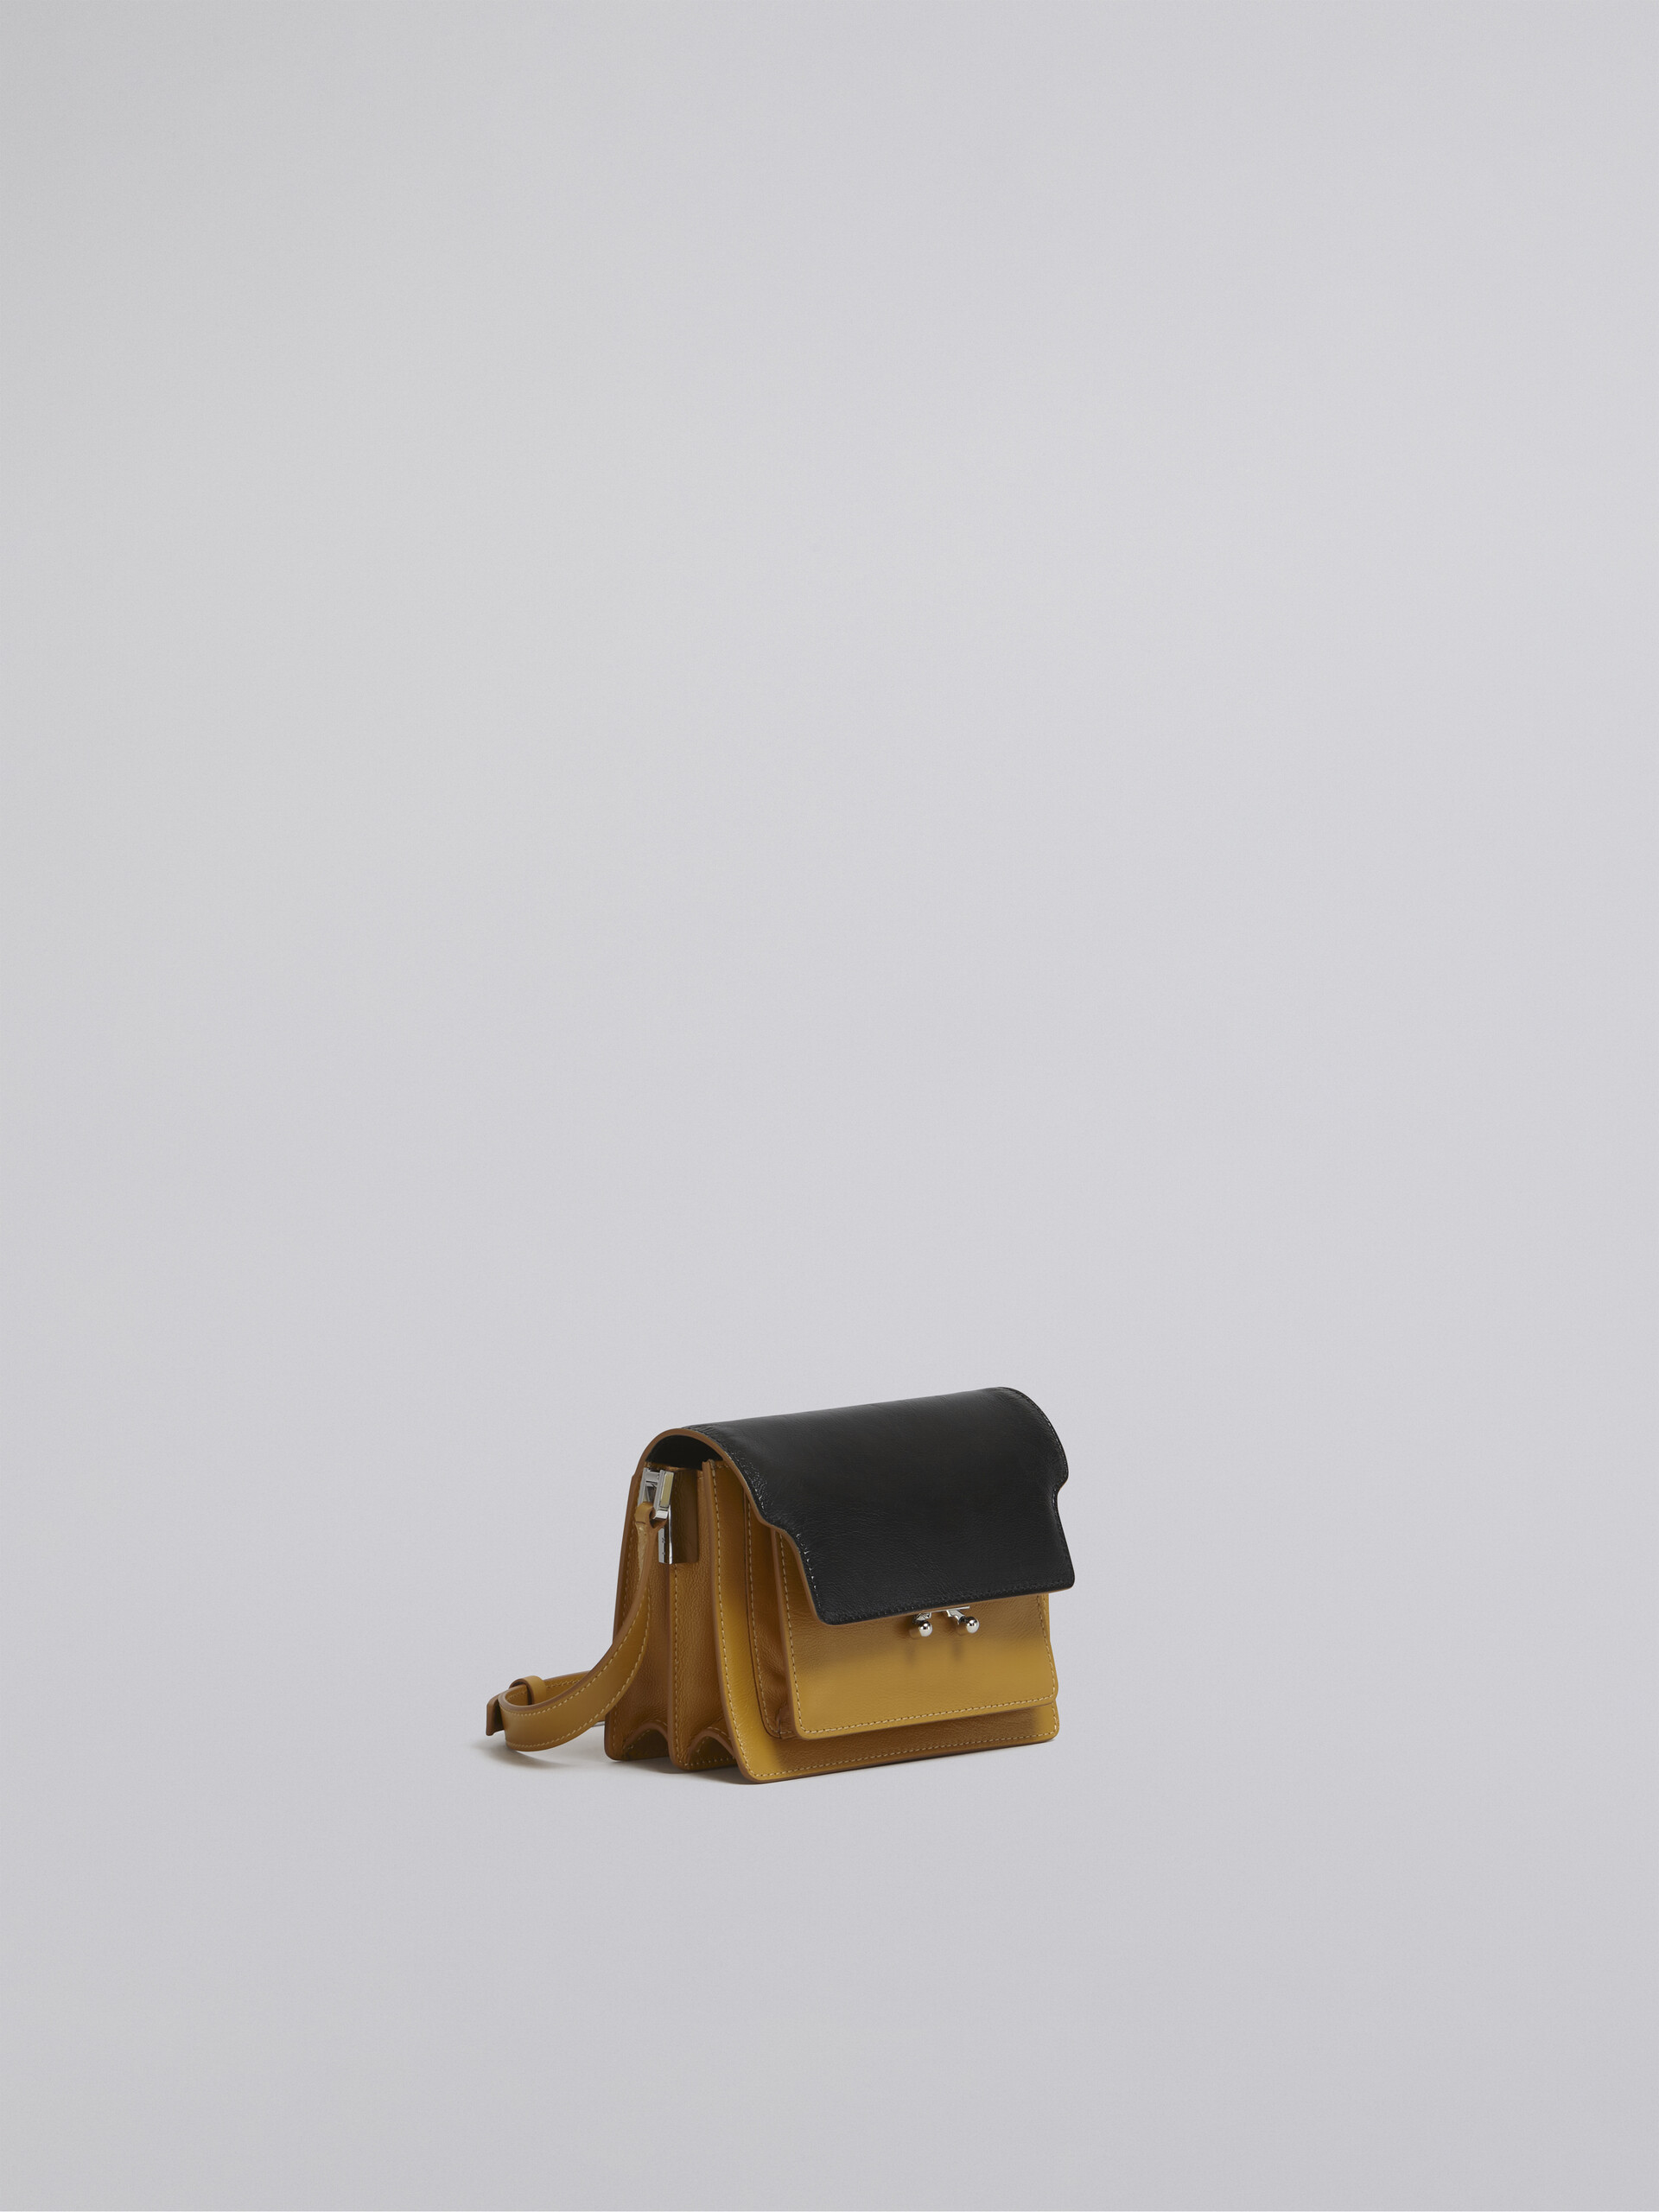 TRUNK SOFT bag mini in pelle gialla e nera - Borse a spalla - Image 6